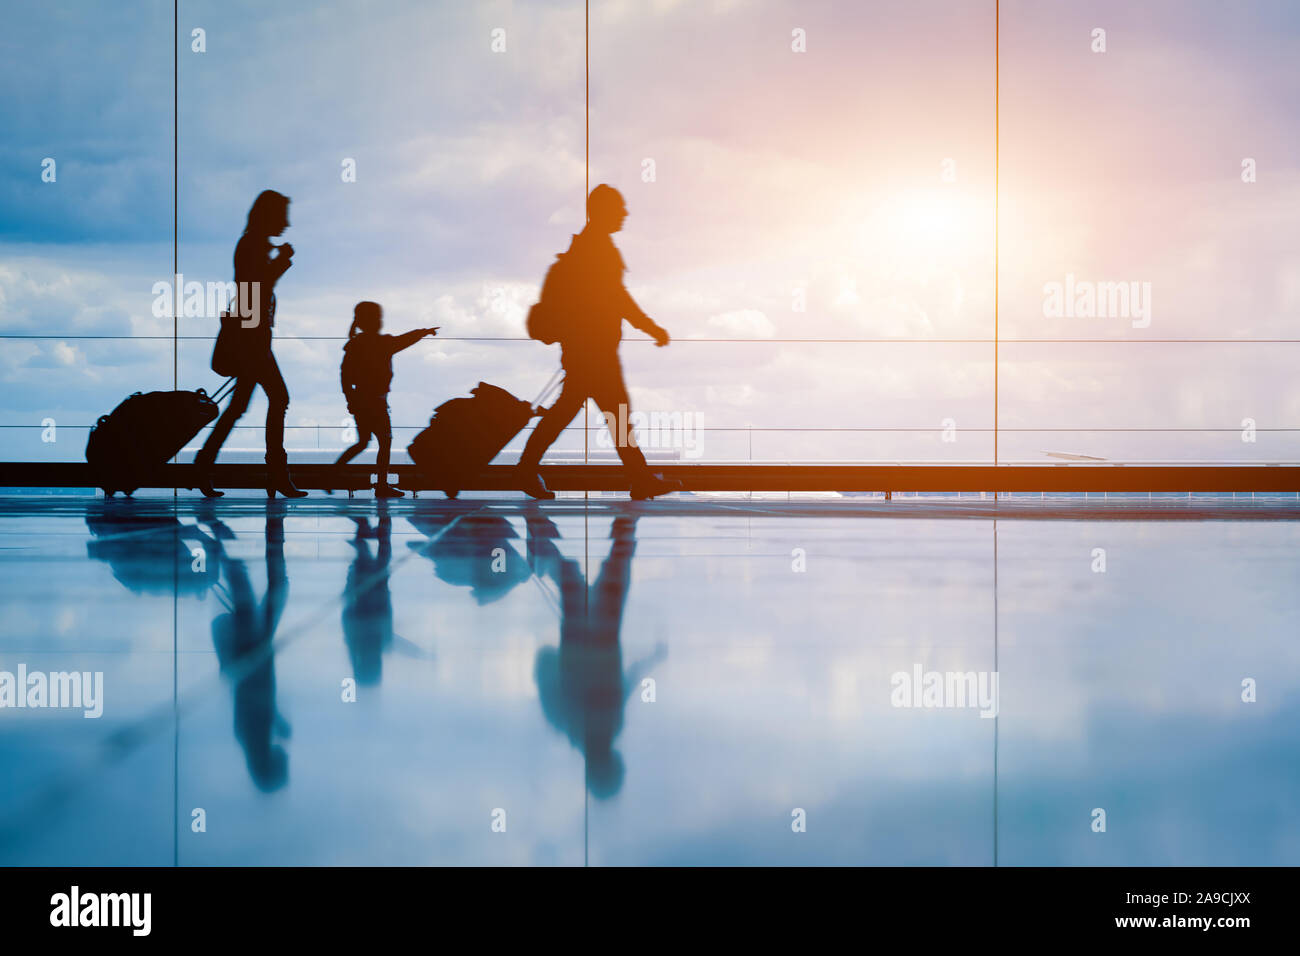 Familie am Flughafen Reisen mit kleinen Kindern und Gepäck zu Fuß zum Abflug-gate, Mädchen zeigen auf Flugzeuge durch Fenster, Silhouette von Menschen, Stockfoto